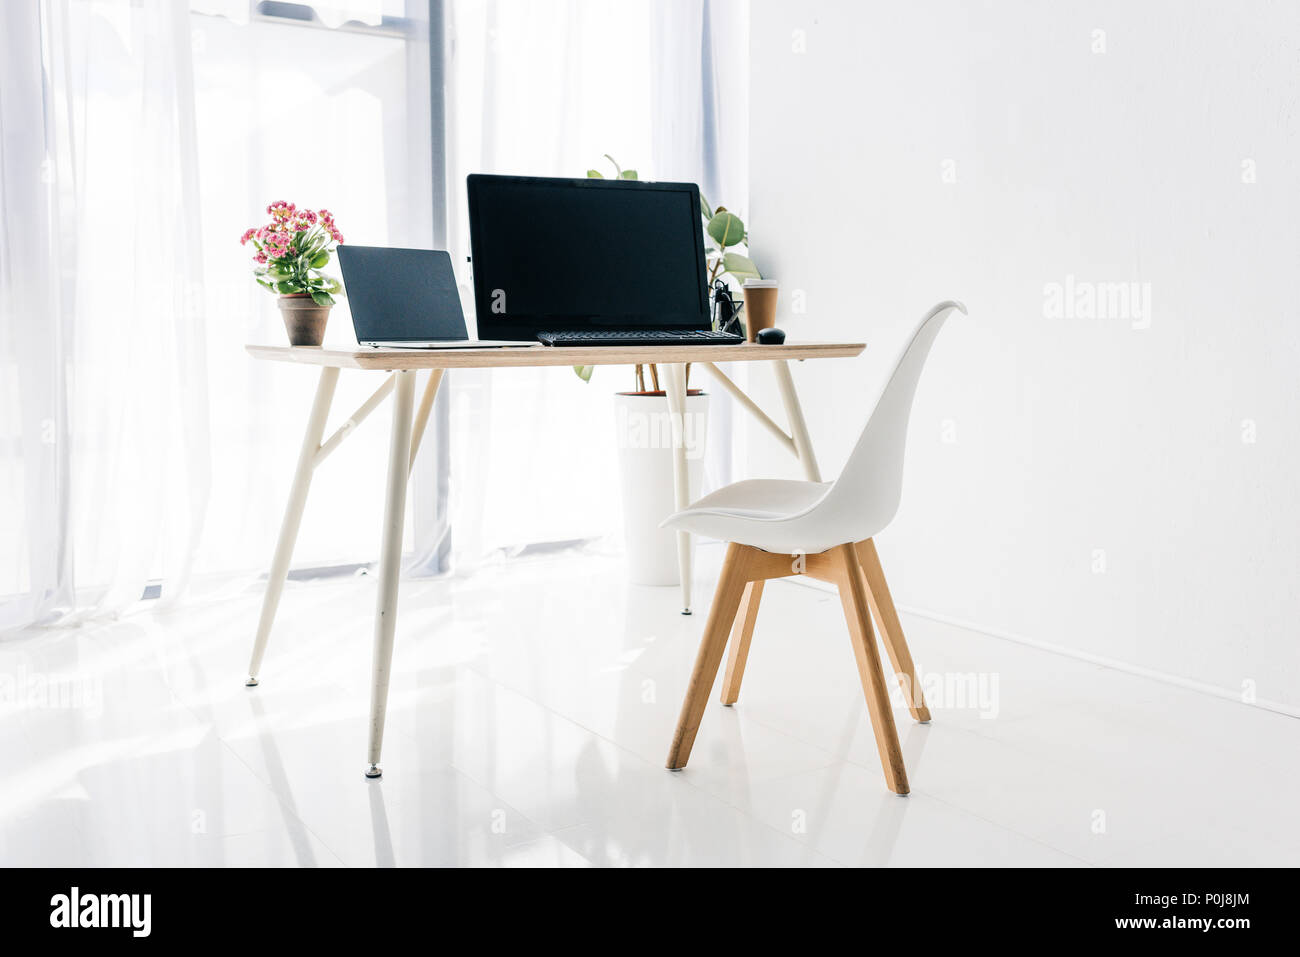 El interior del lugar de trabajo con silla, macetas con plantas, y el ordenador portátil sobre la mesa Foto de stock